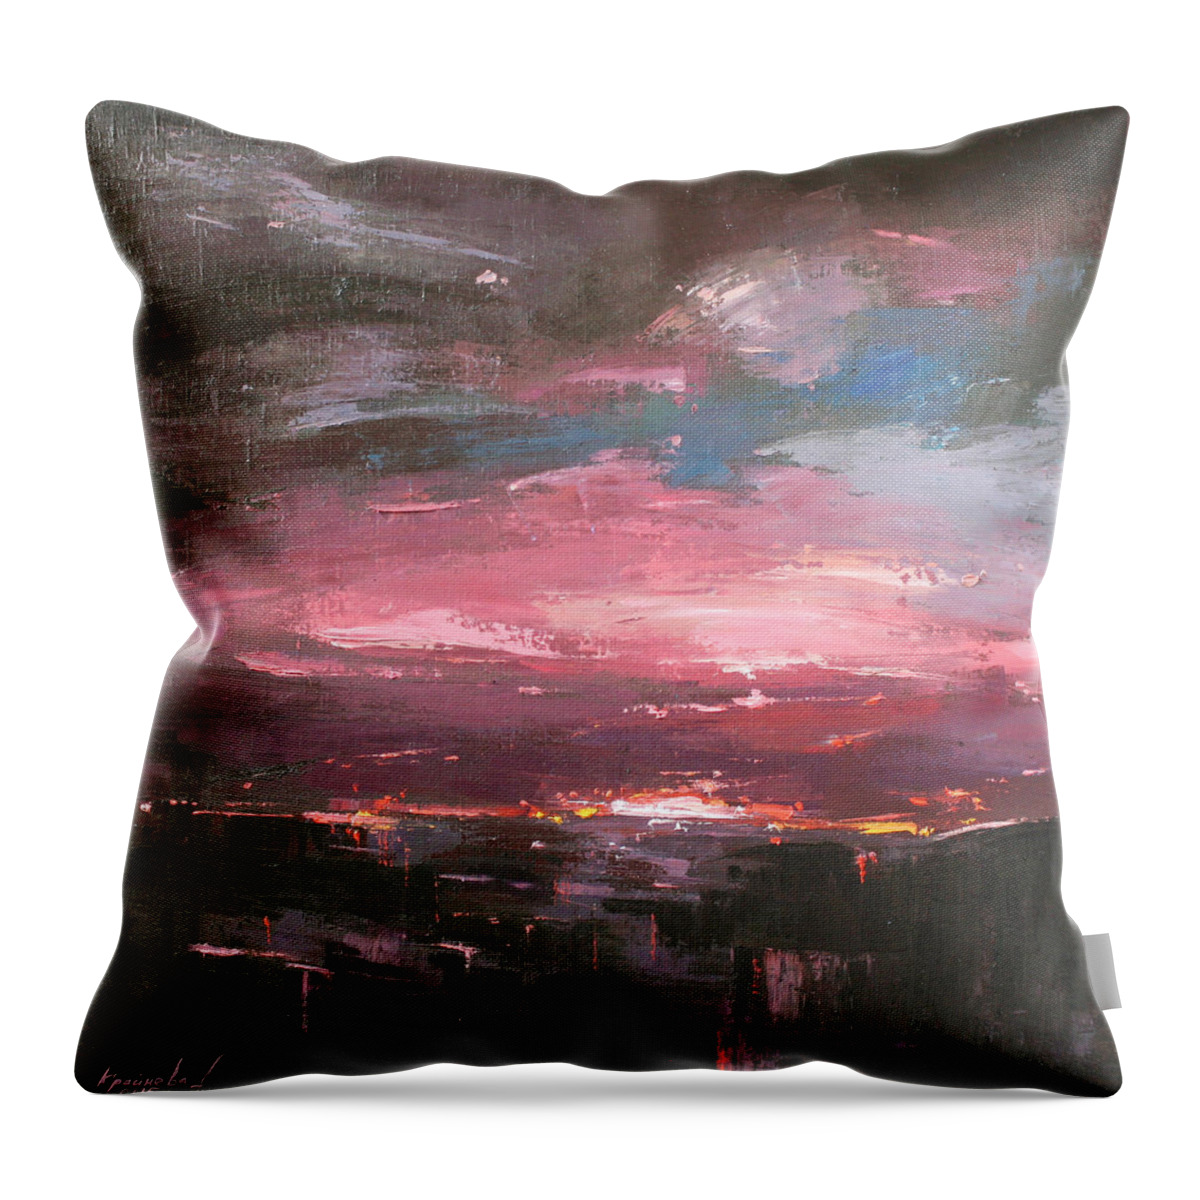 Pink Throw Pillow featuring the painting Pink by Anastasija Kraineva